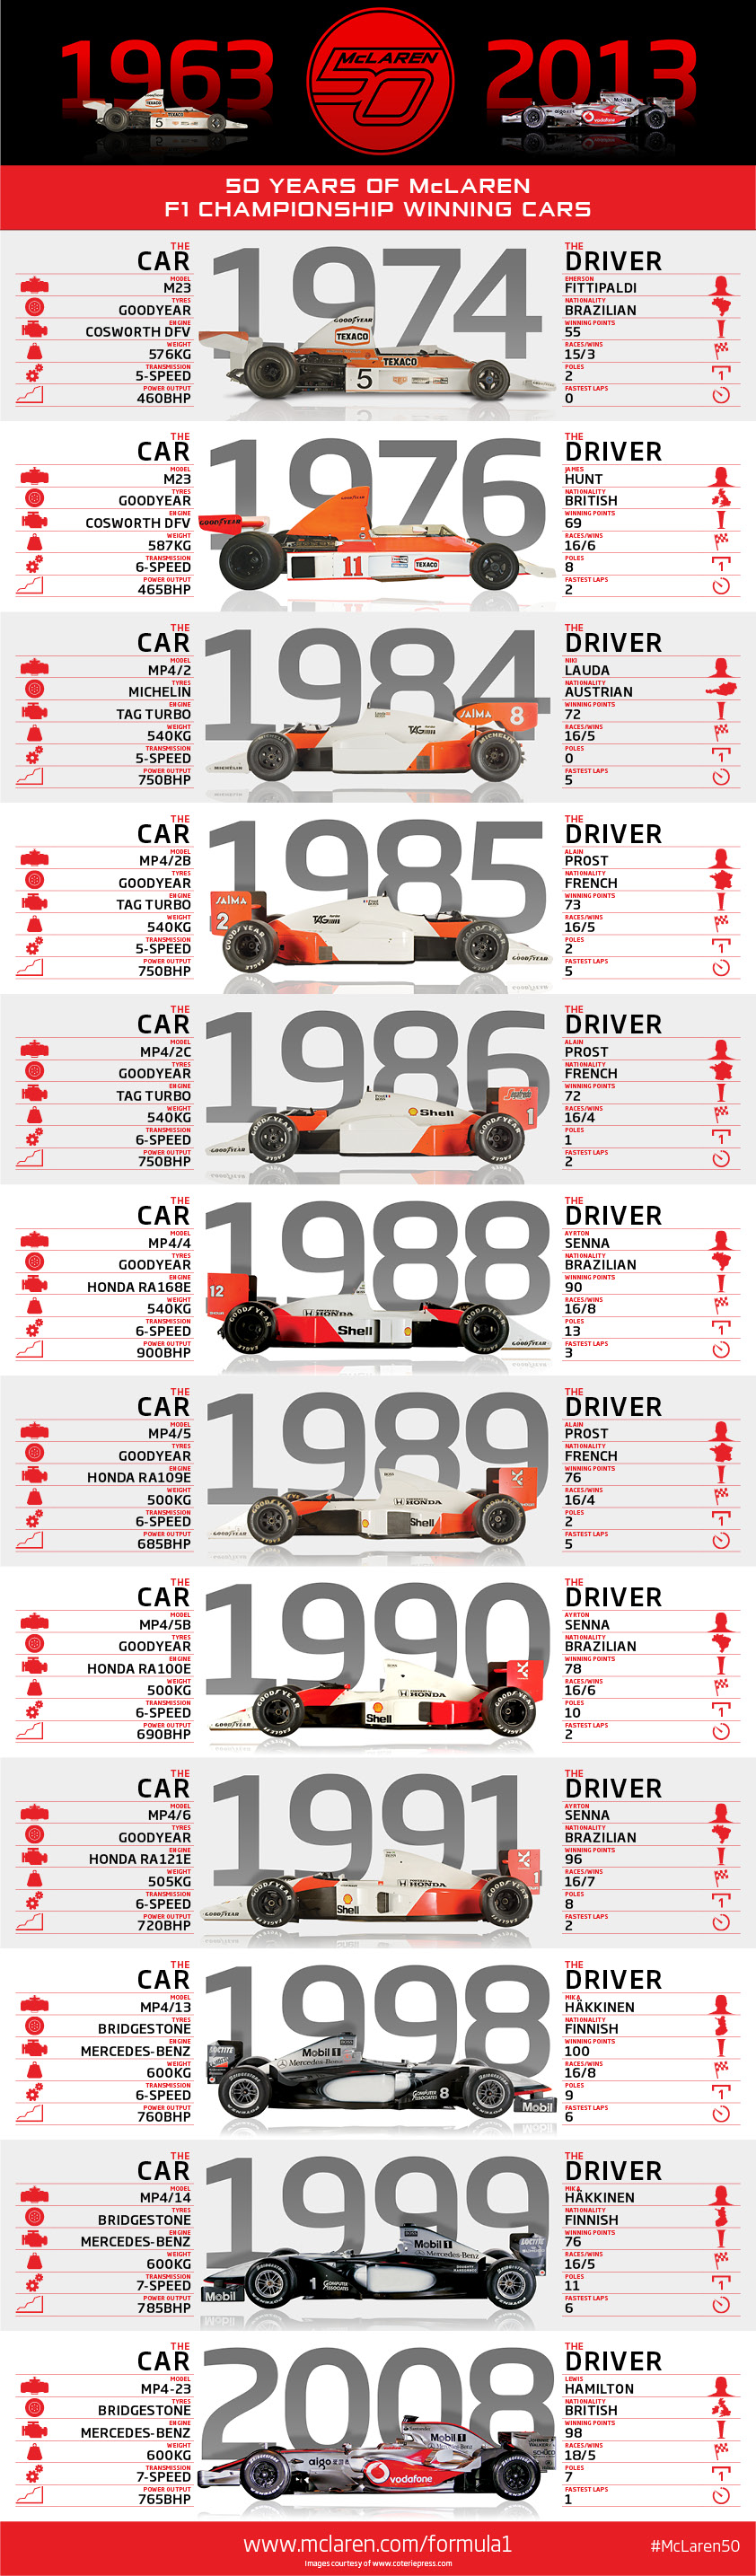 McLaren50-Infographic (1).jpg